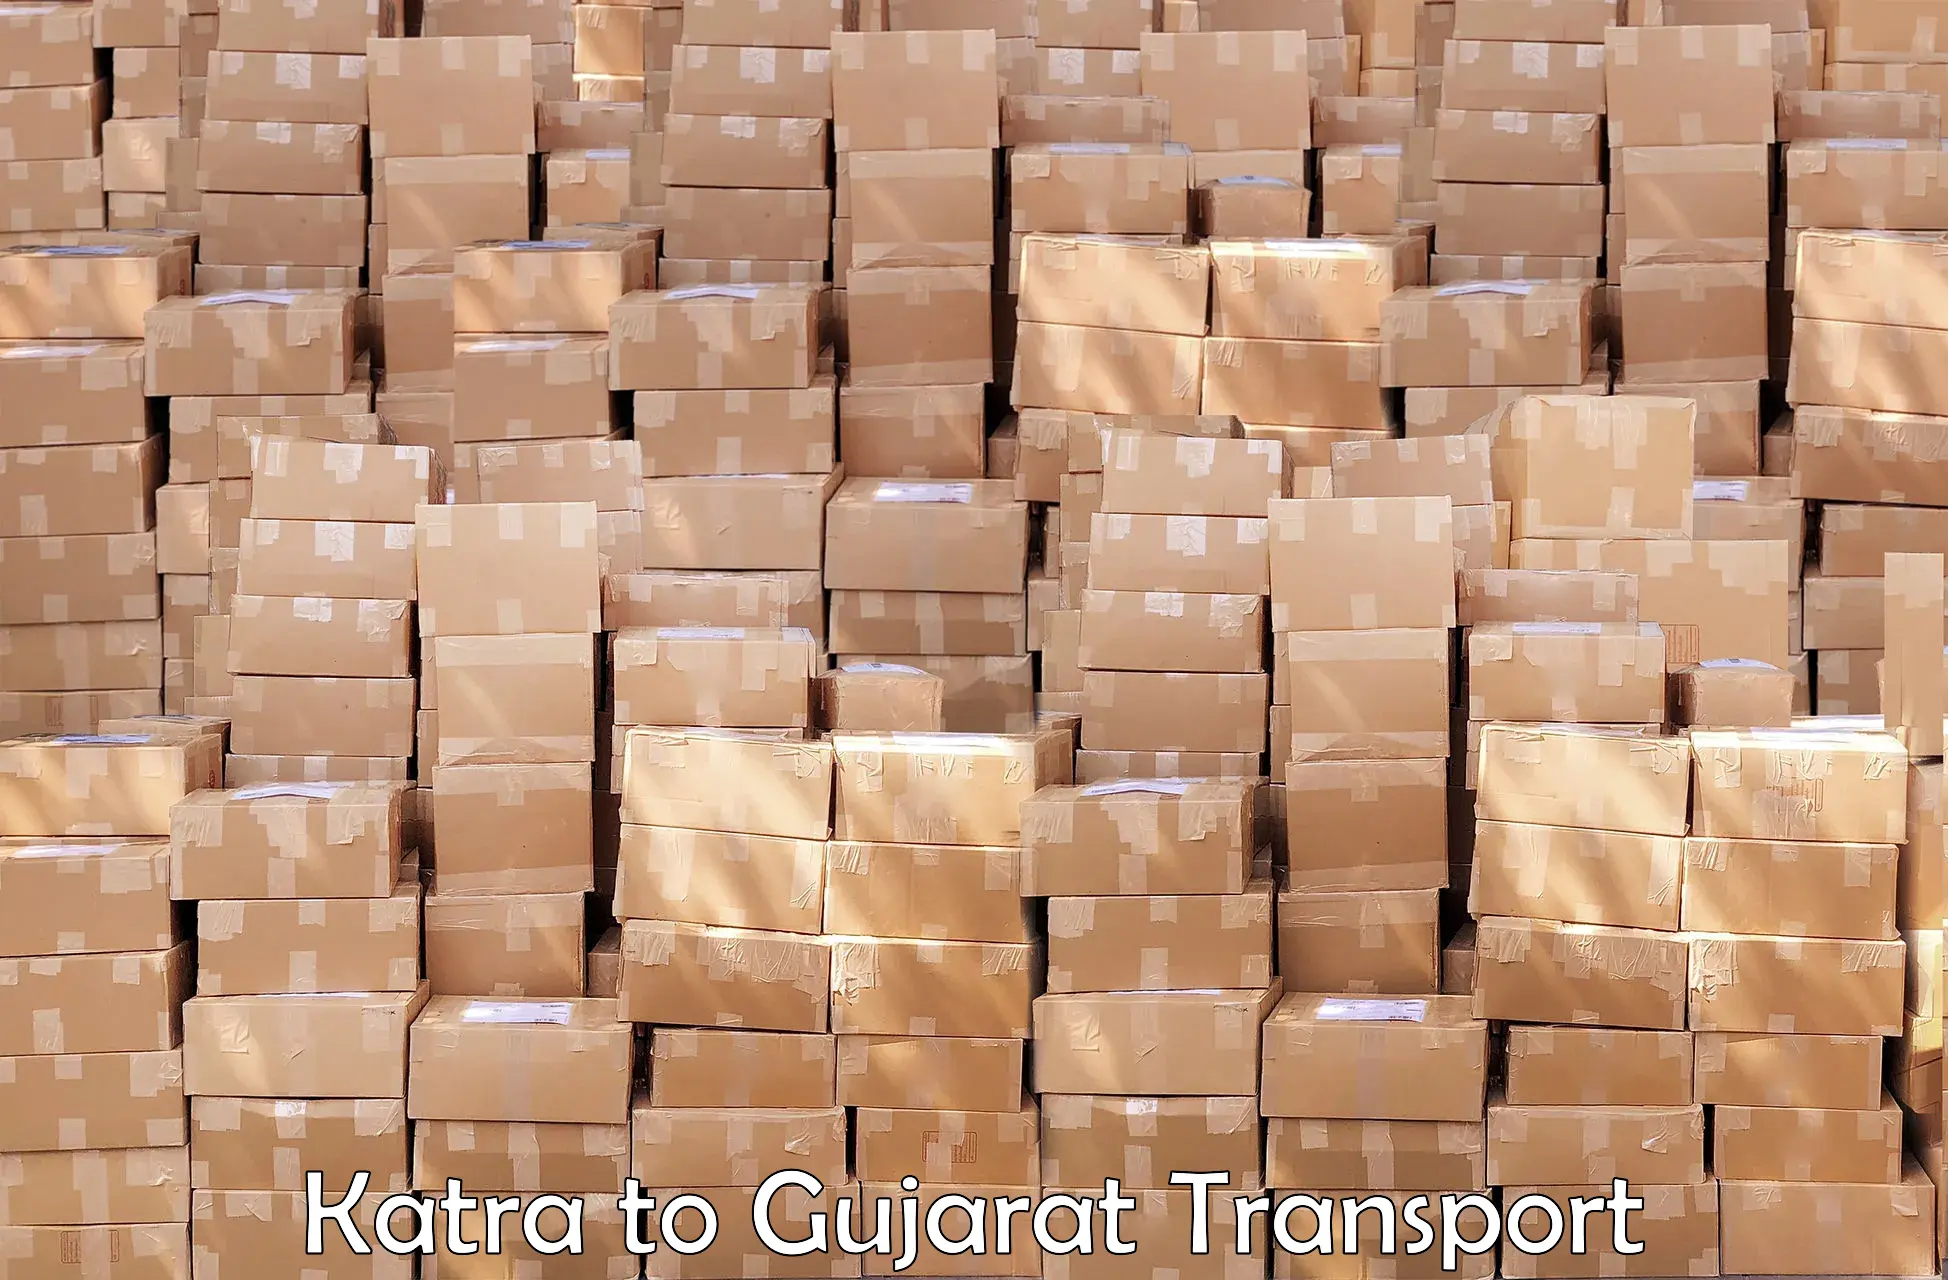 Delivery service Katra to Gujarat